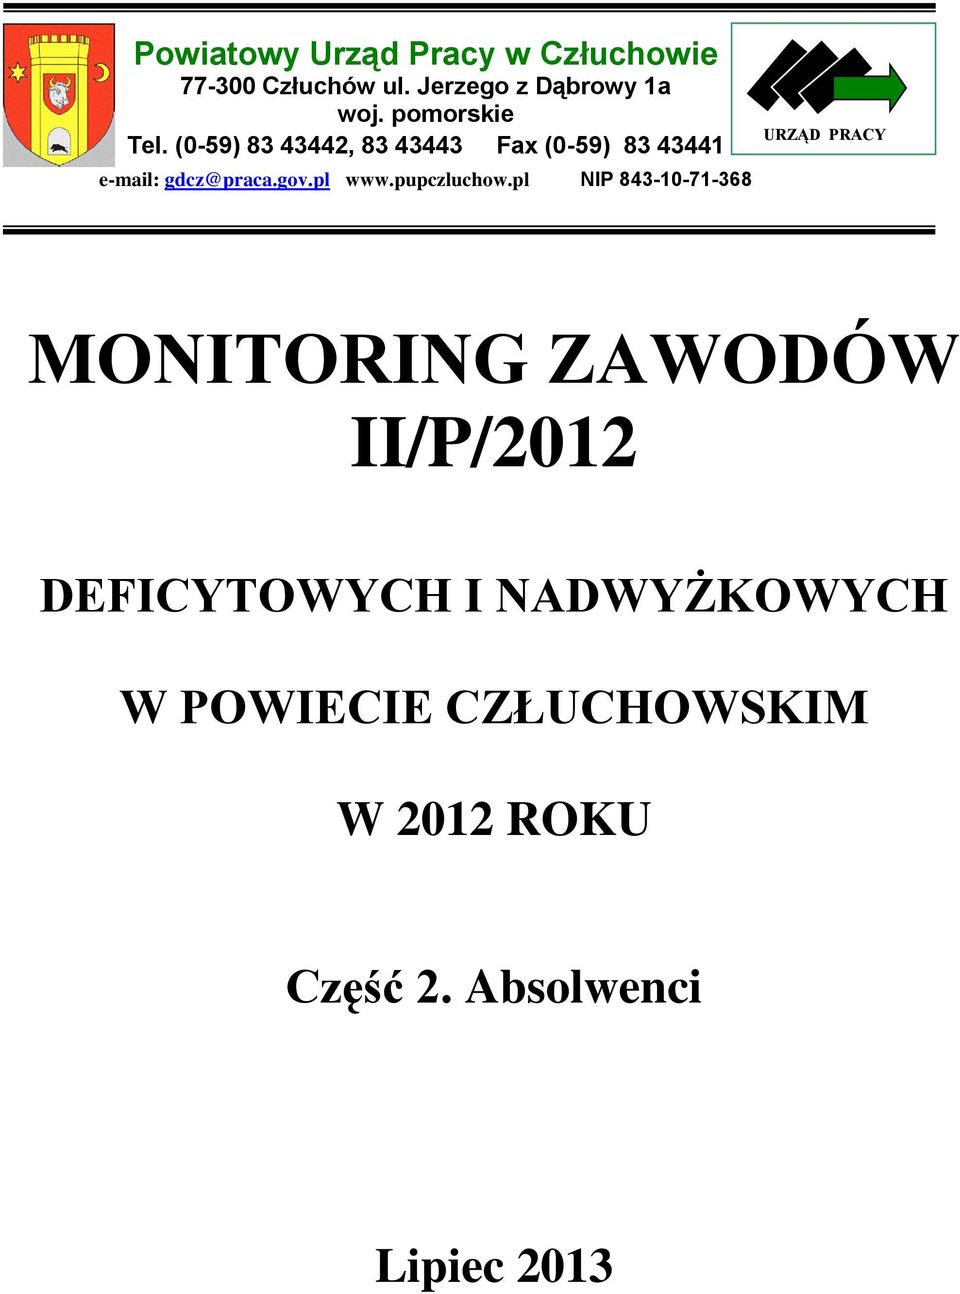 gov.pl www.pupczluchow.